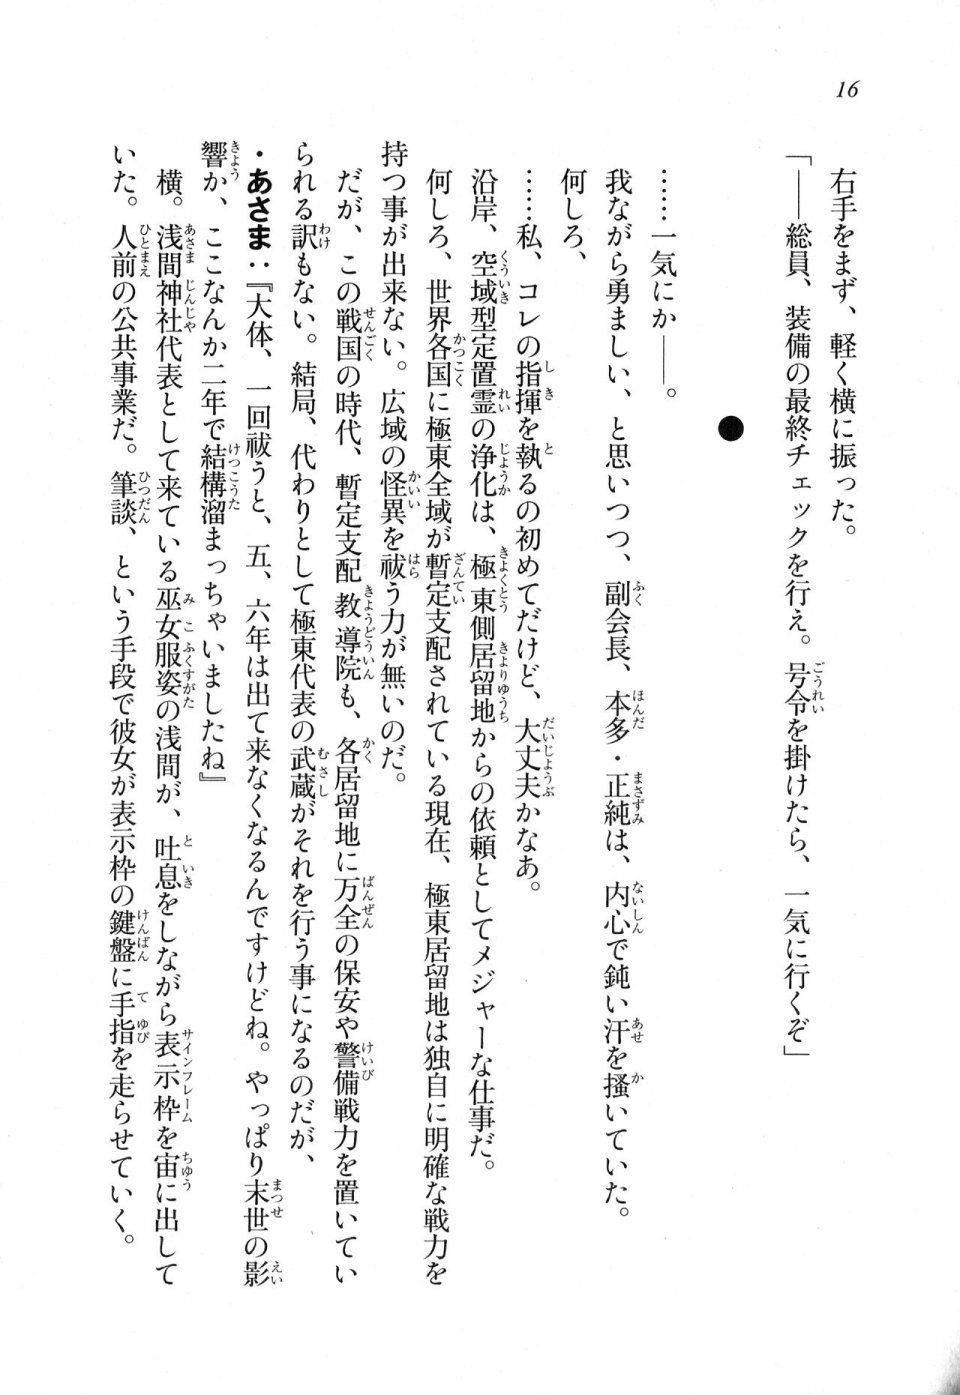 Kyoukai Senjou no Horizon LN Sidestory Vol 1 - Photo #15